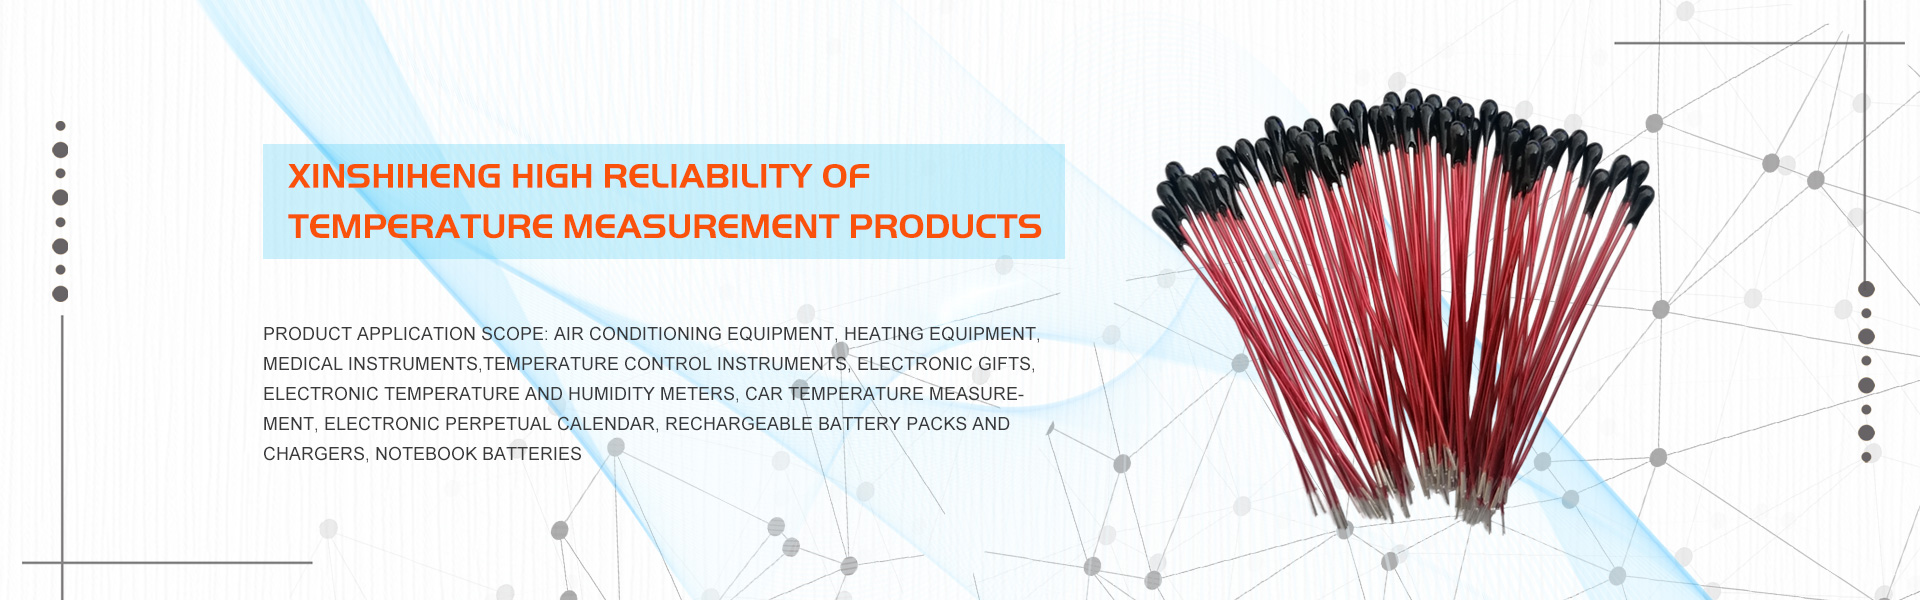 Fabricant de thermistance NTC, capteur de température, haute précision,GUANGDONG XINSHIHENG TECHNOLOGY CO.,LTD